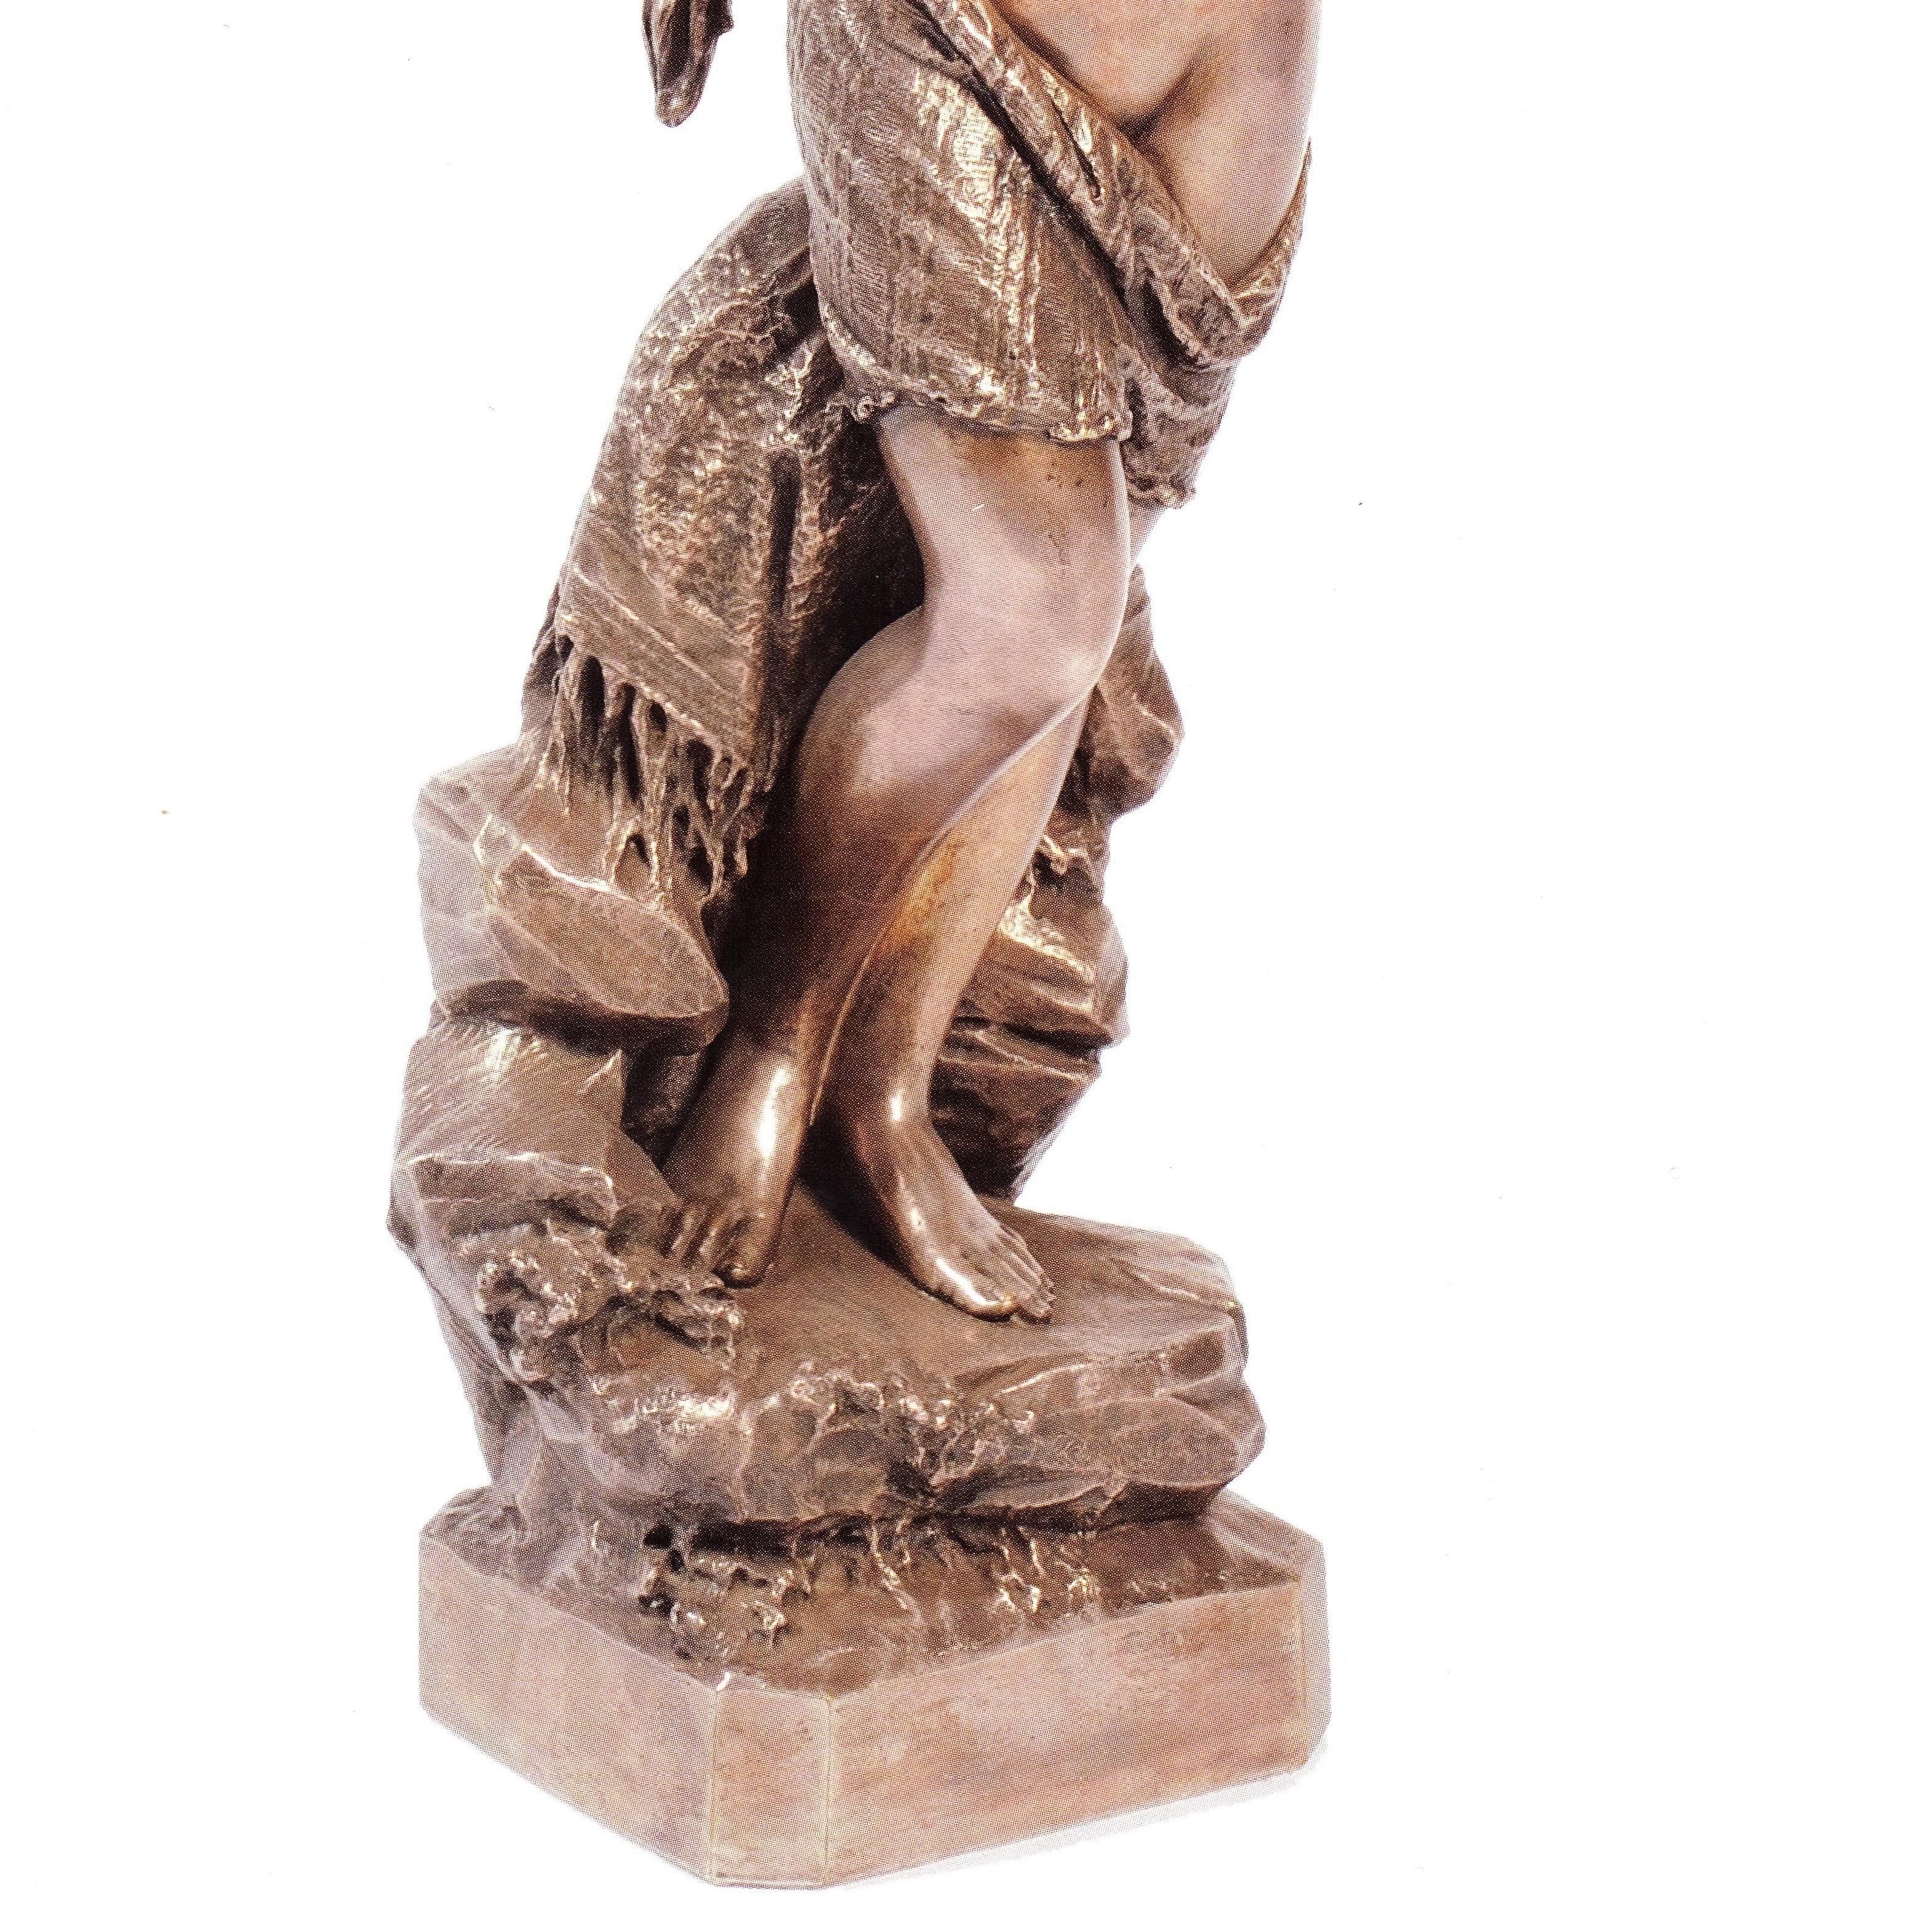 Versilberte Bronze, die eine junge Odaliske darstellt, 1886 von dem italienischen Bildhauer Giuseppe Salvi (1836-1905) geschaffen.
Signatur, Ort und Jahr auf dem Sockel eingraviert: G. Salvi fece Roma 1886. Auf der Basis: 